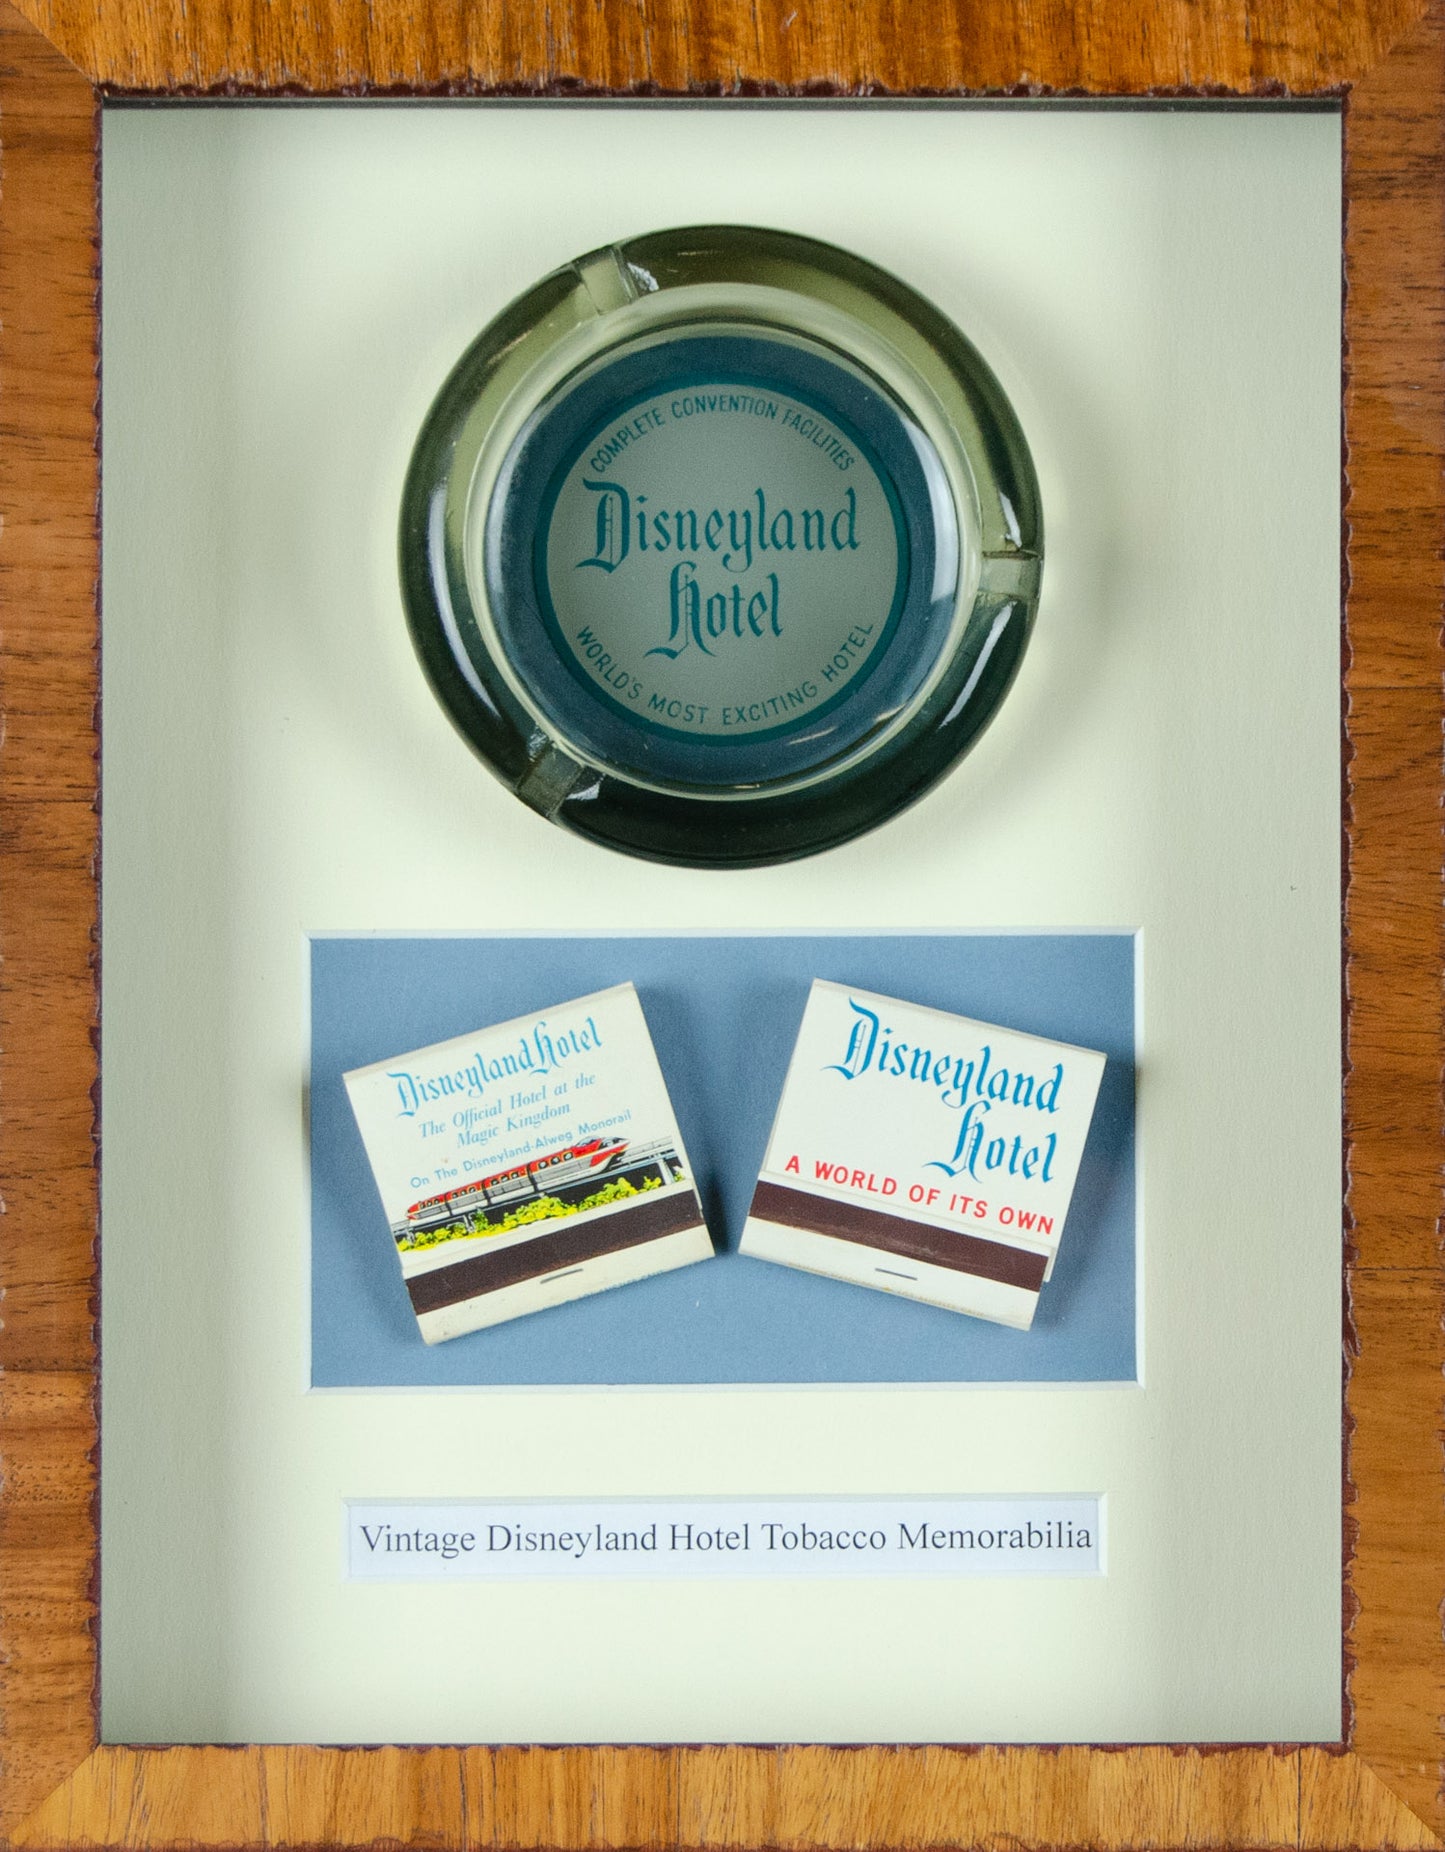 Vintage Disneyland Tobacco Memorabilia